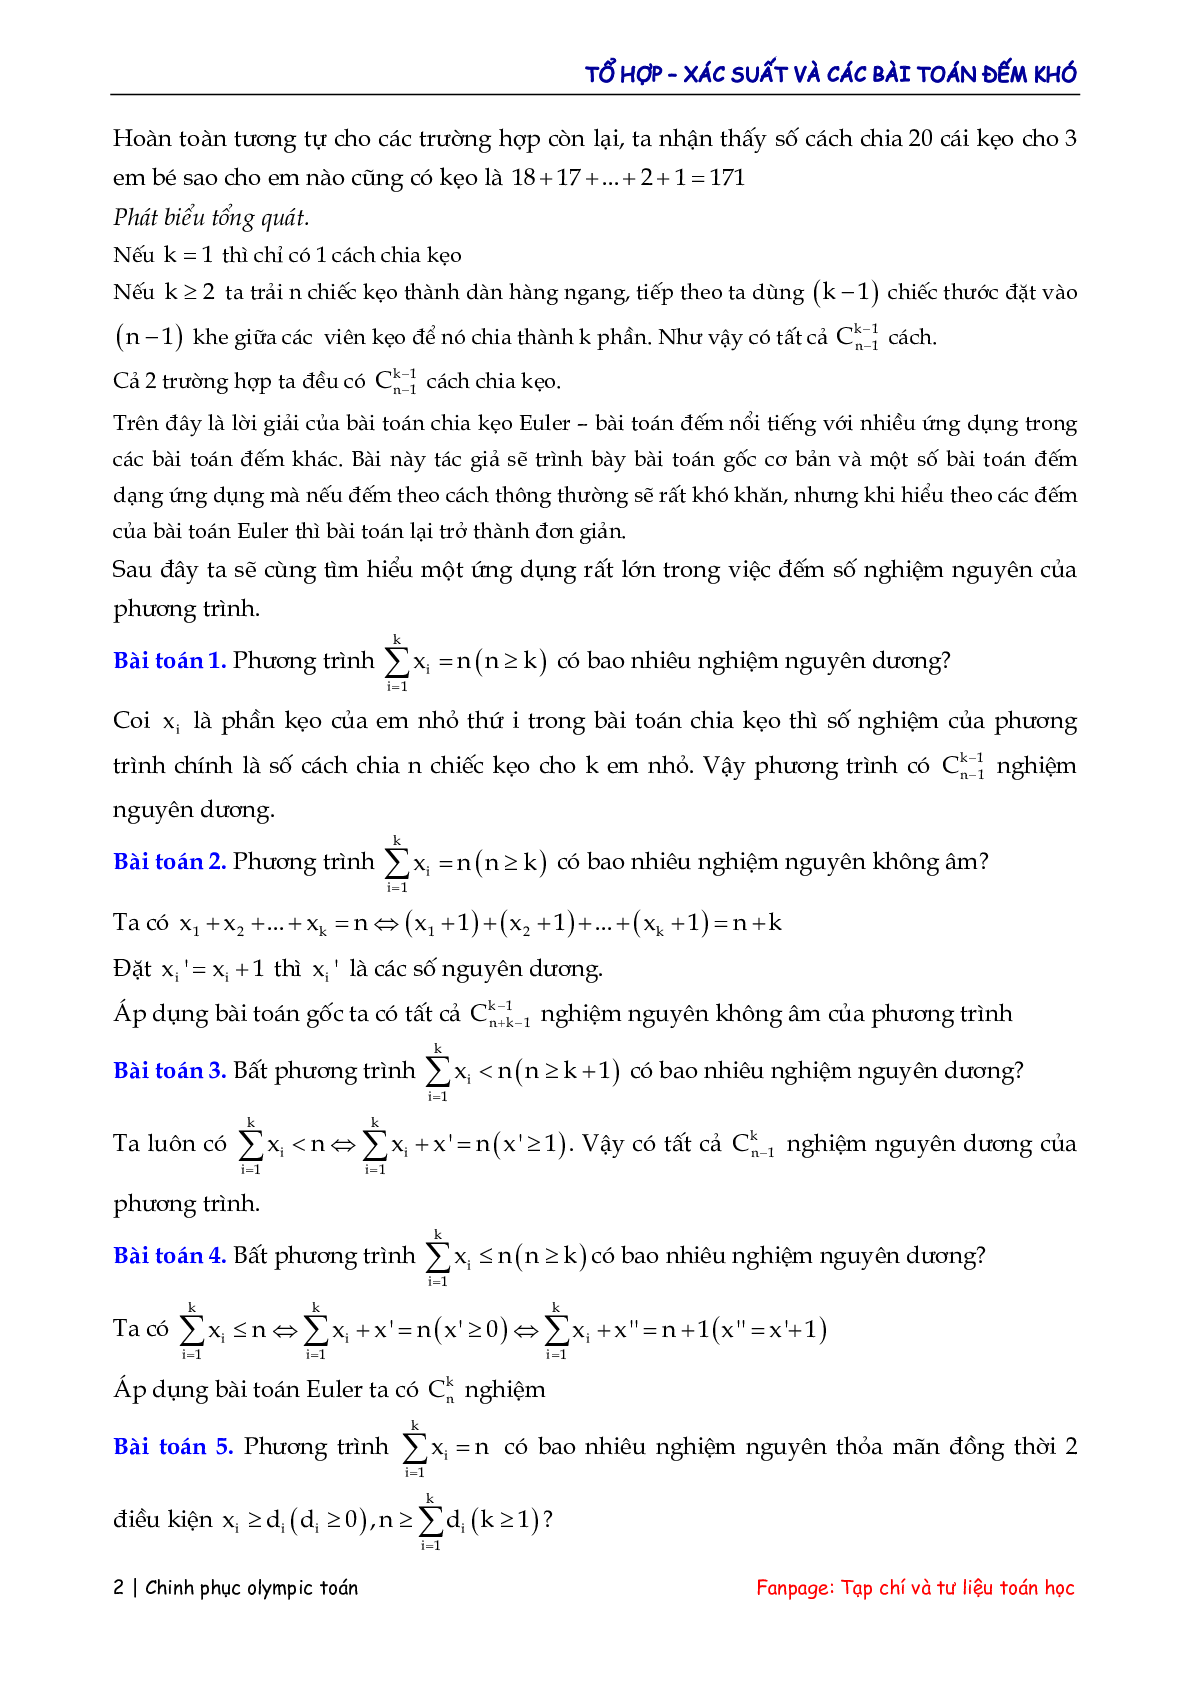 Các bài toán đếm – xác suất hay và khó (trang 2)